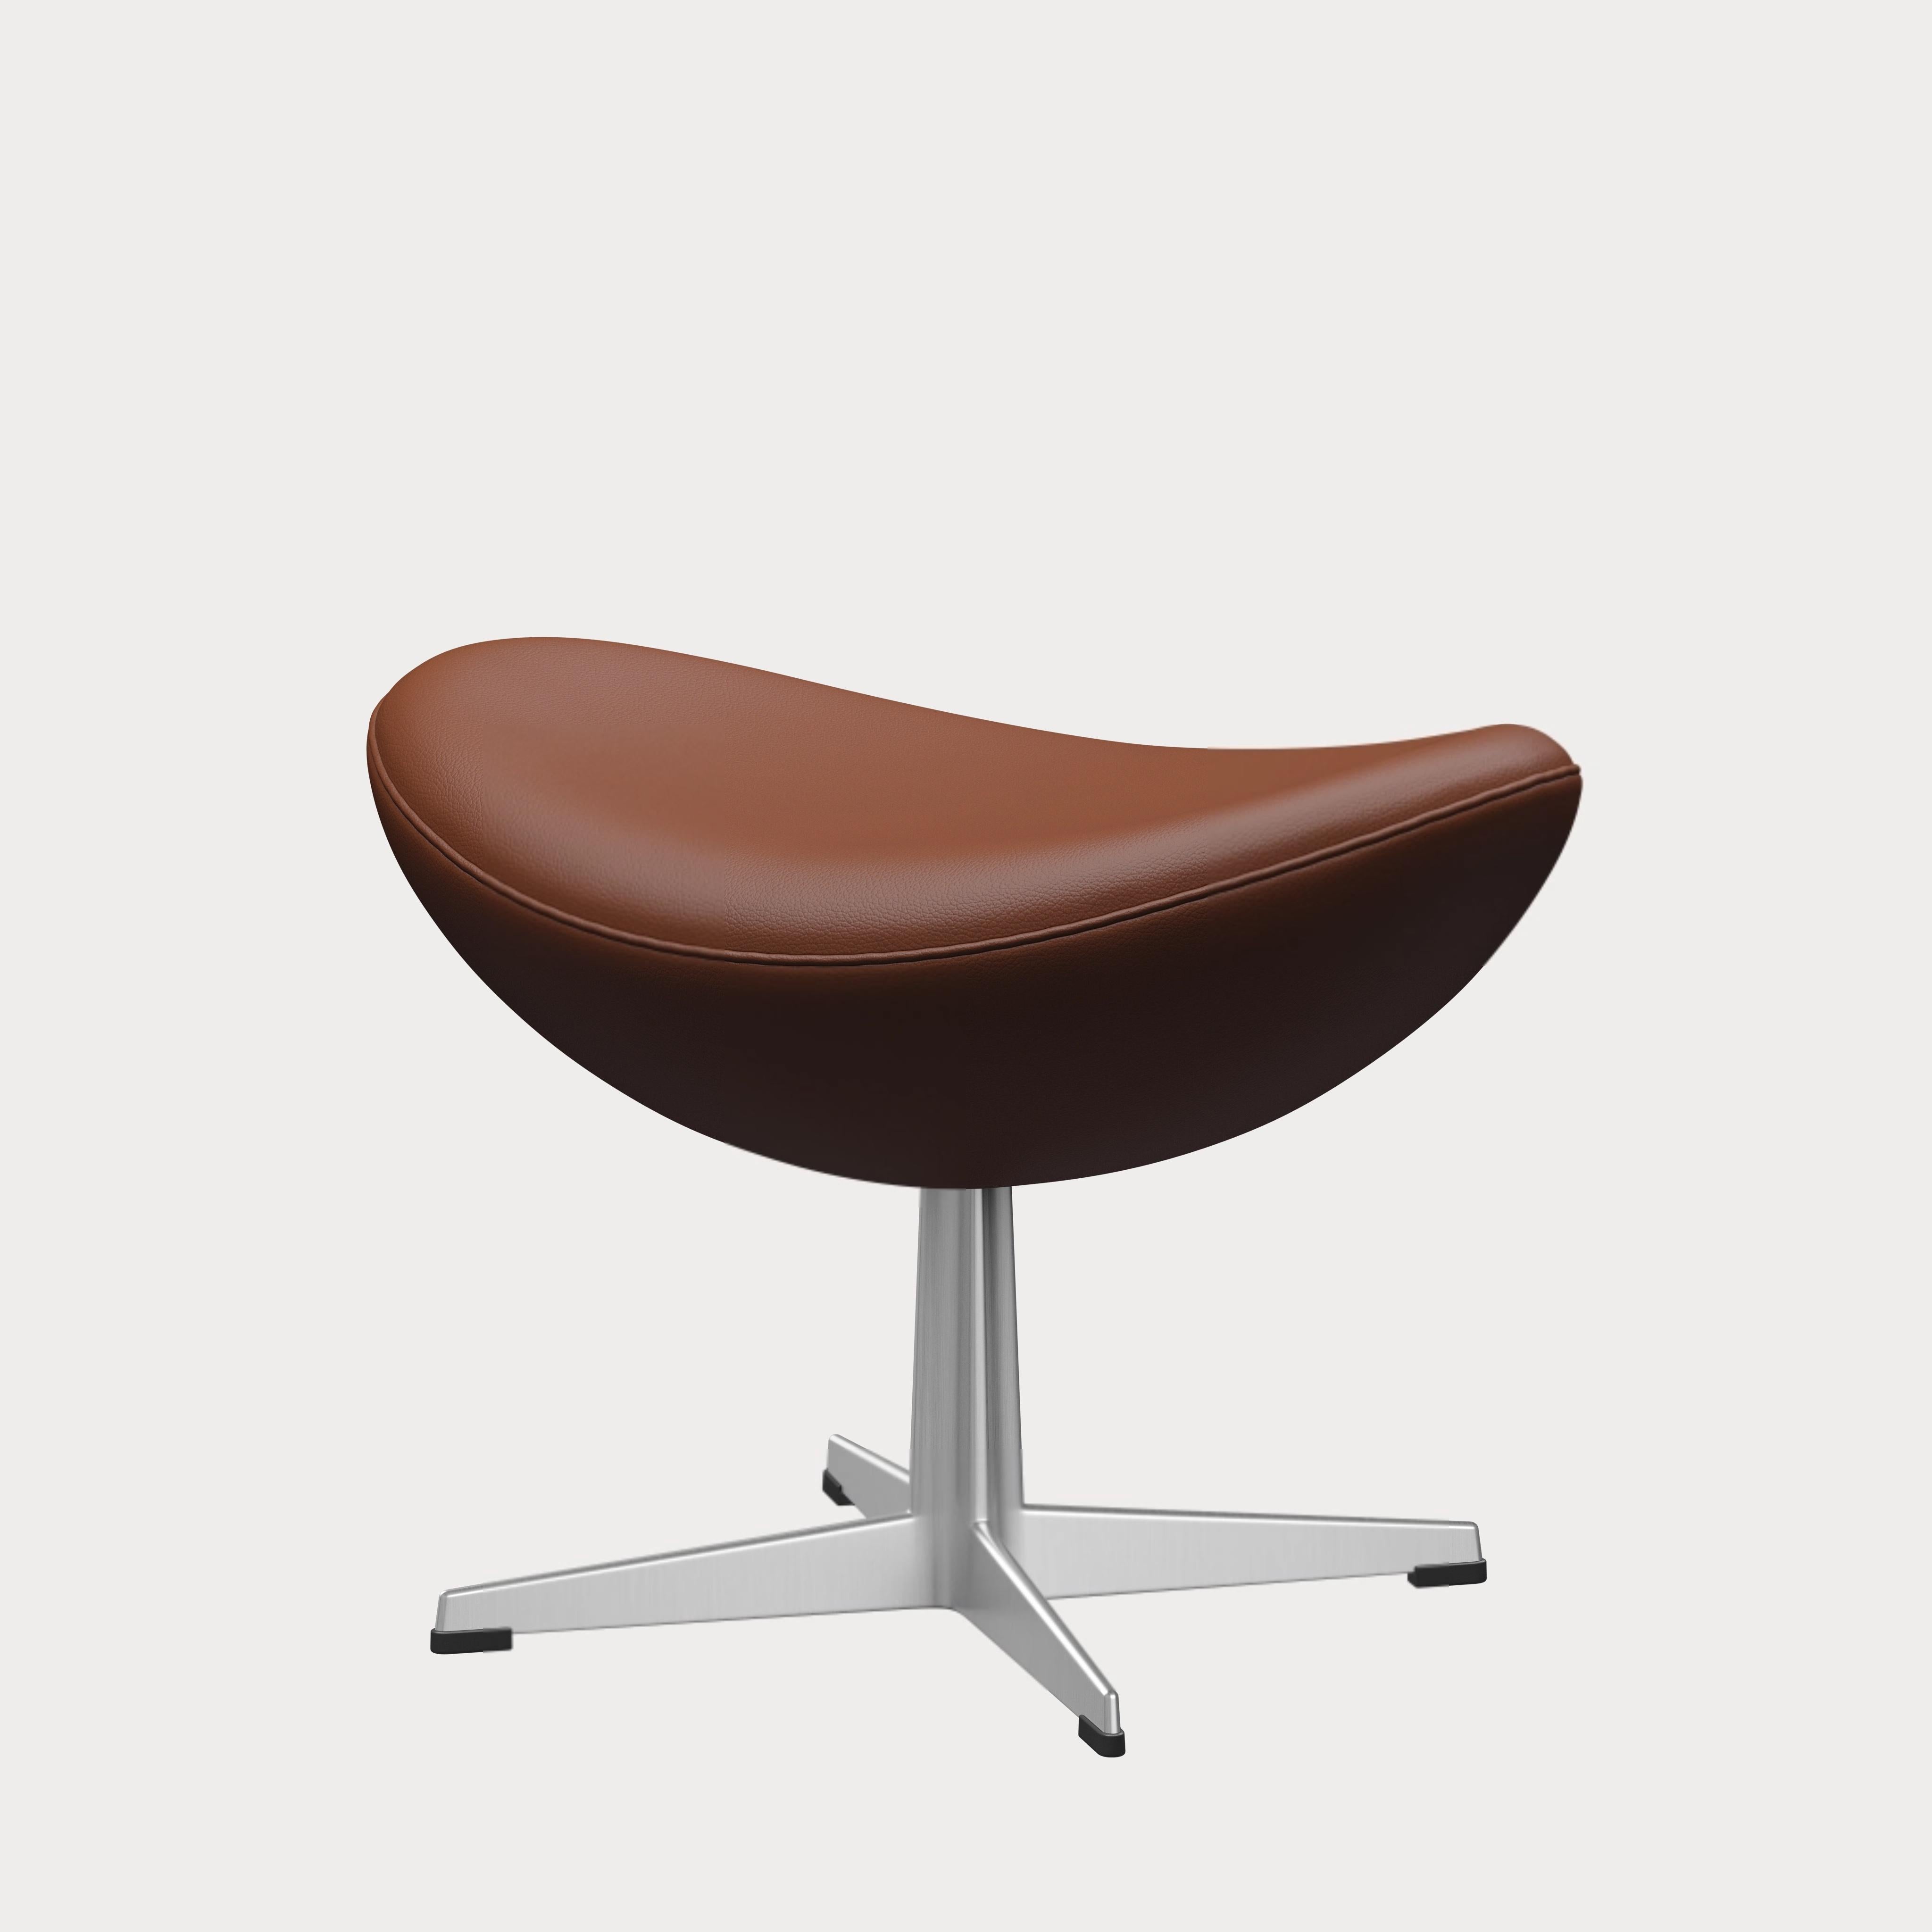 Arne Jacobsen 'Egg' Footstool for Fritz Hansen in Leather Upholstery (Cat. 4) For Sale 3